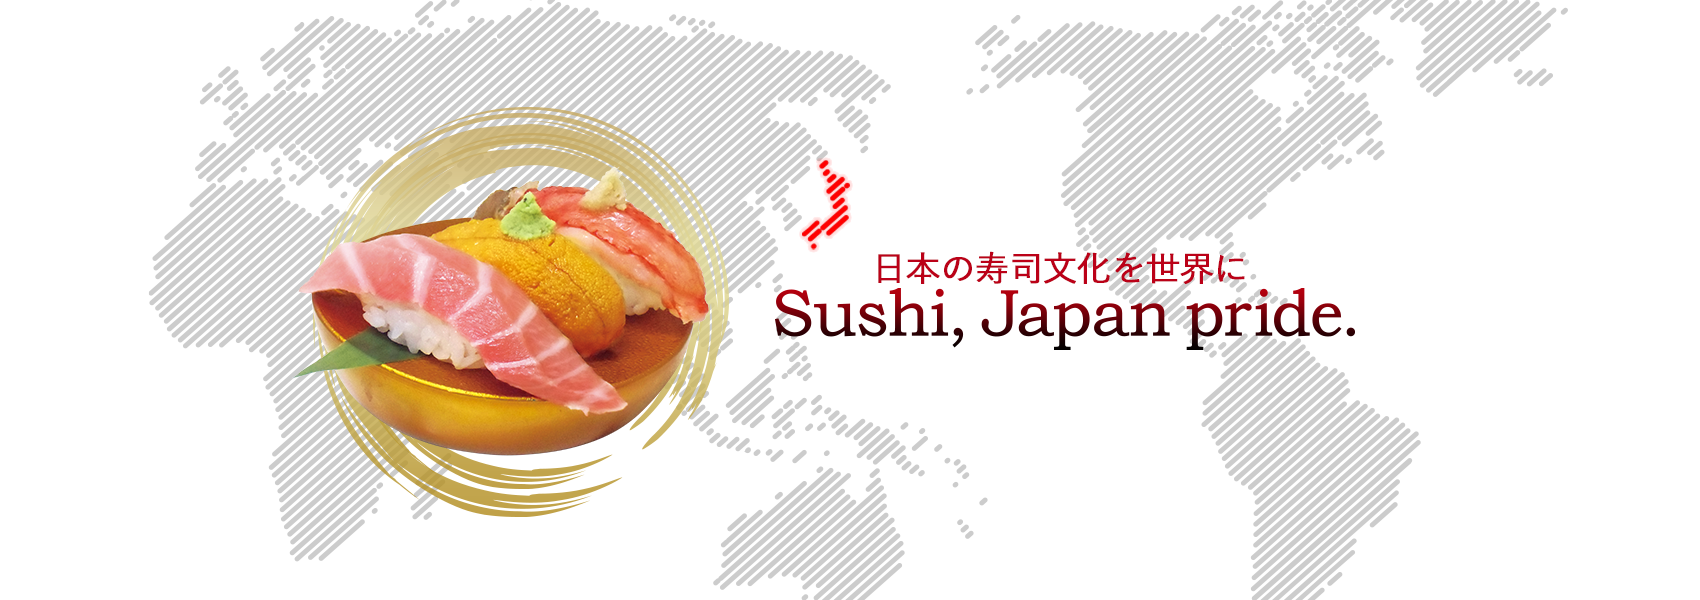 日本の寿司文化を世界に